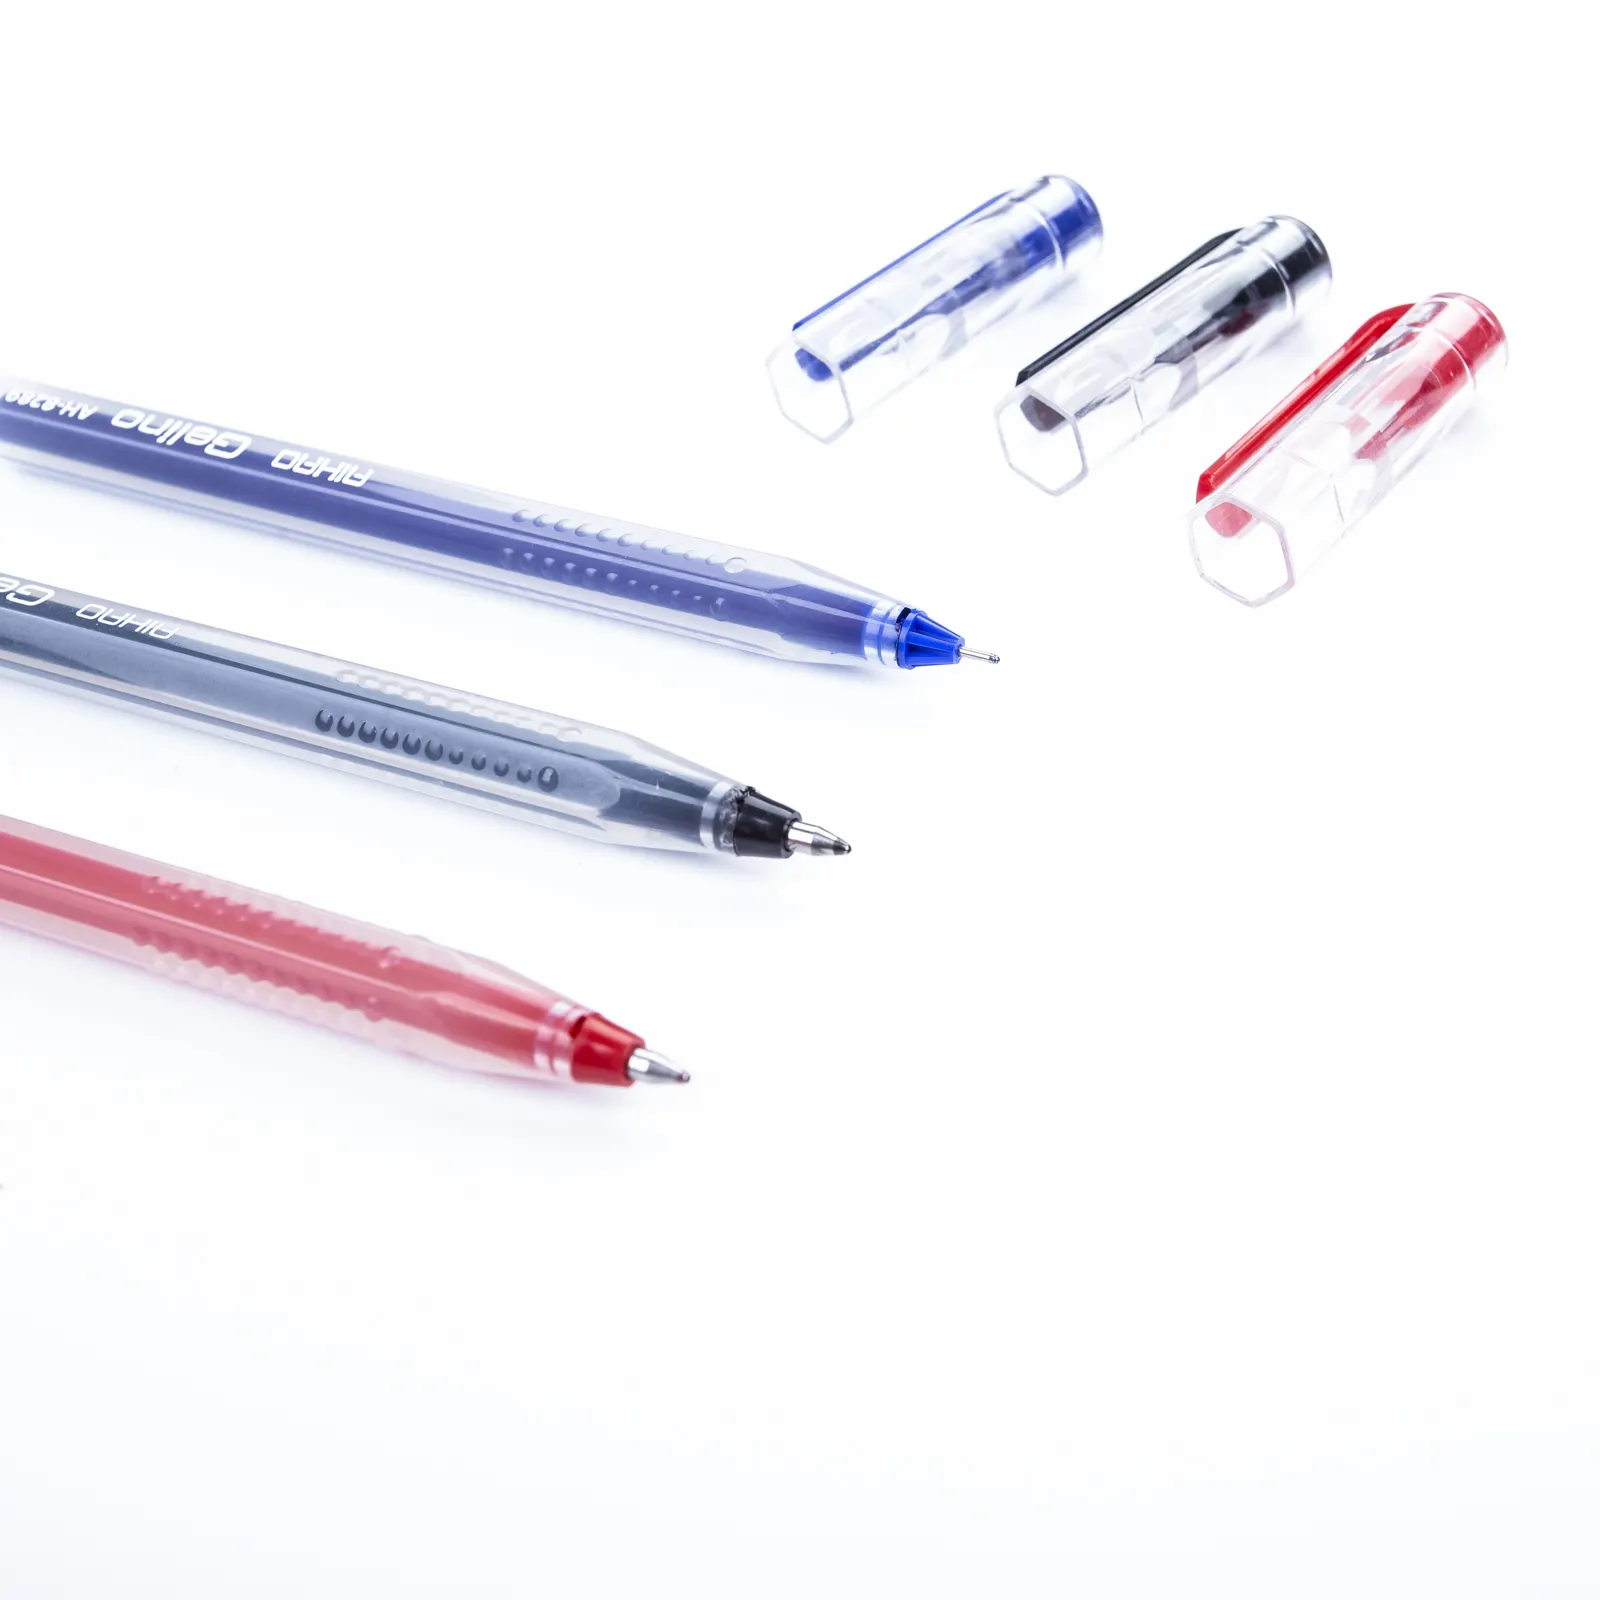 अहाओ ने उच्च गुणवत्ता वाले पेन का 0.7 जेल स्याही का परीक्षण किया